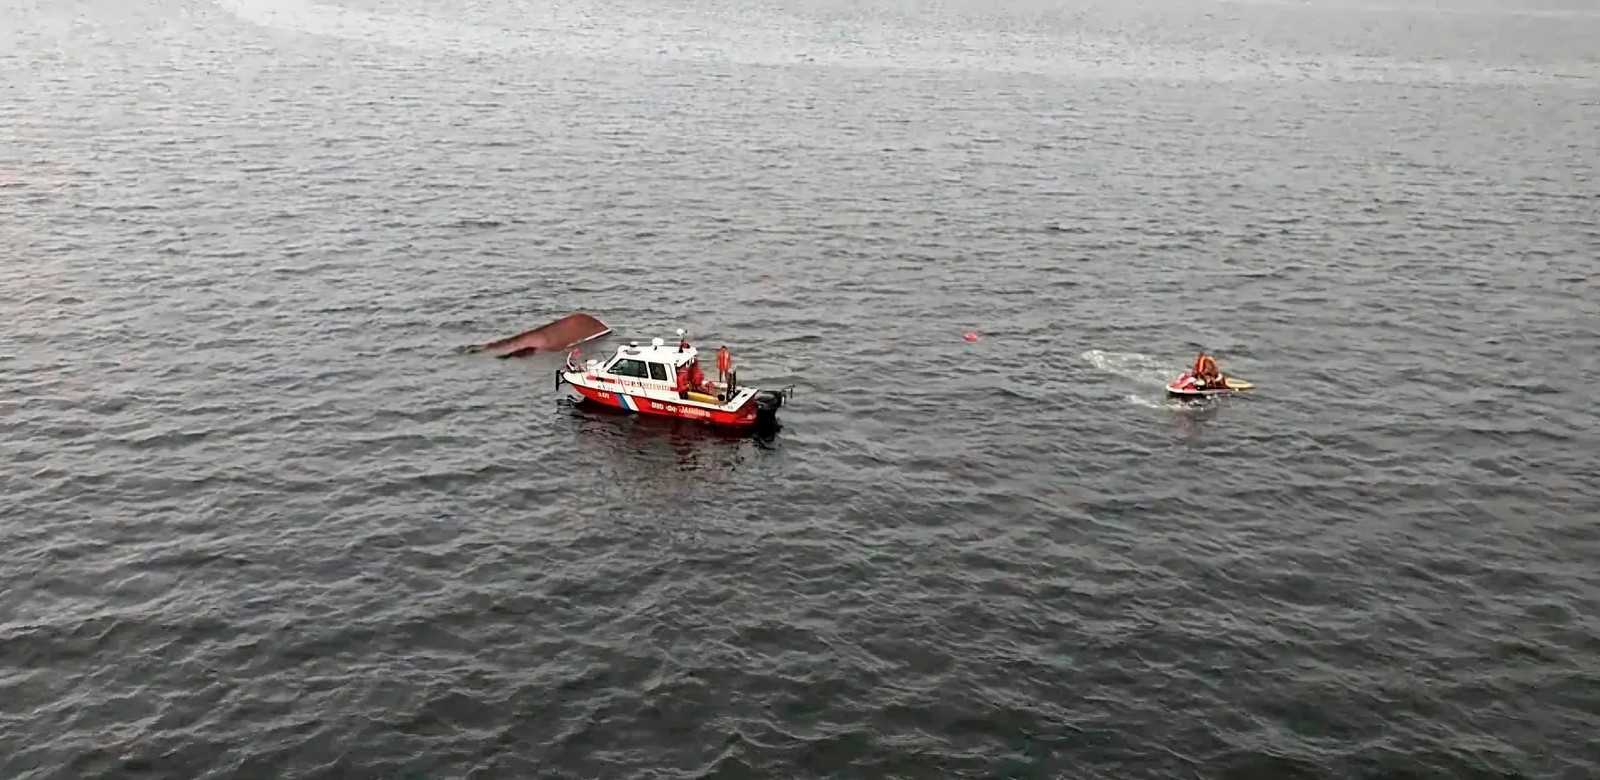 Buscas por desaparecidos de naufrágio na Baía de Guanabara. — Foto: Reprodução / TV Globo